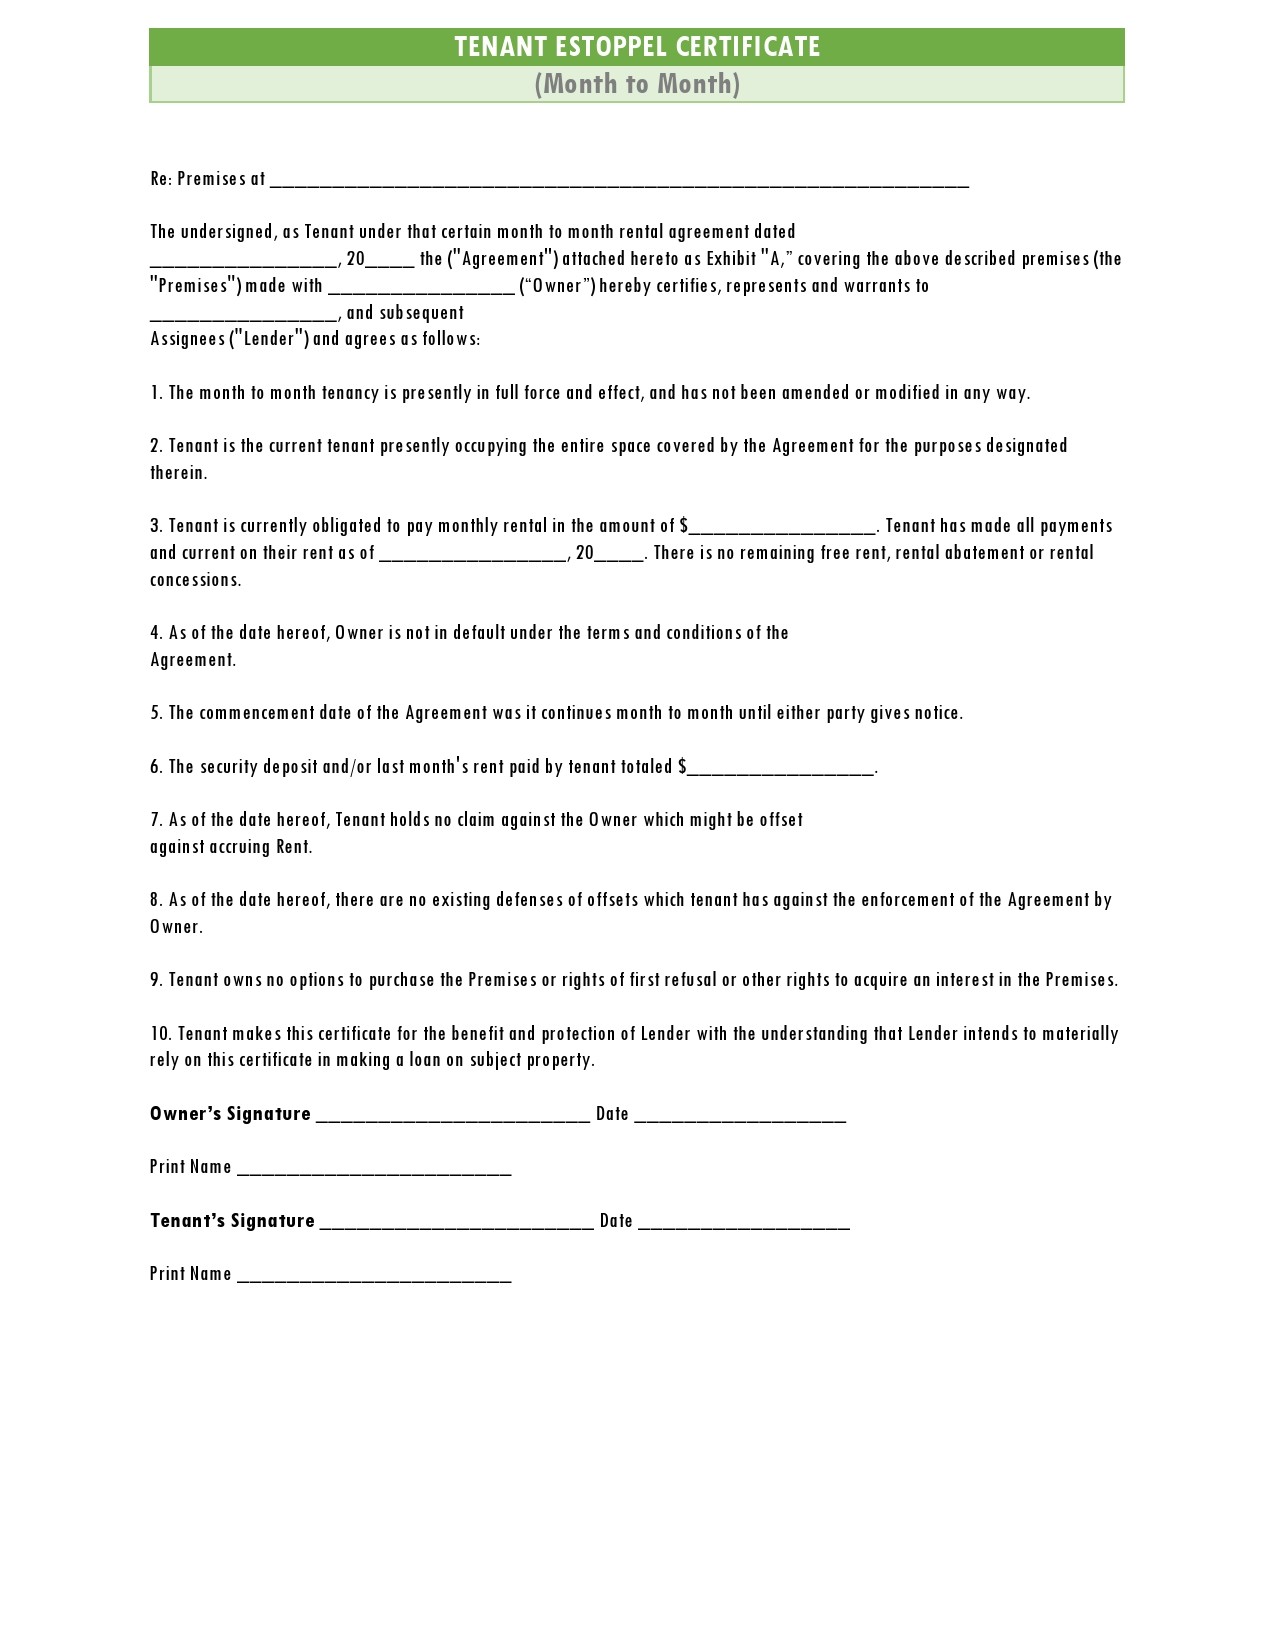 Free estoppel certificate form 39